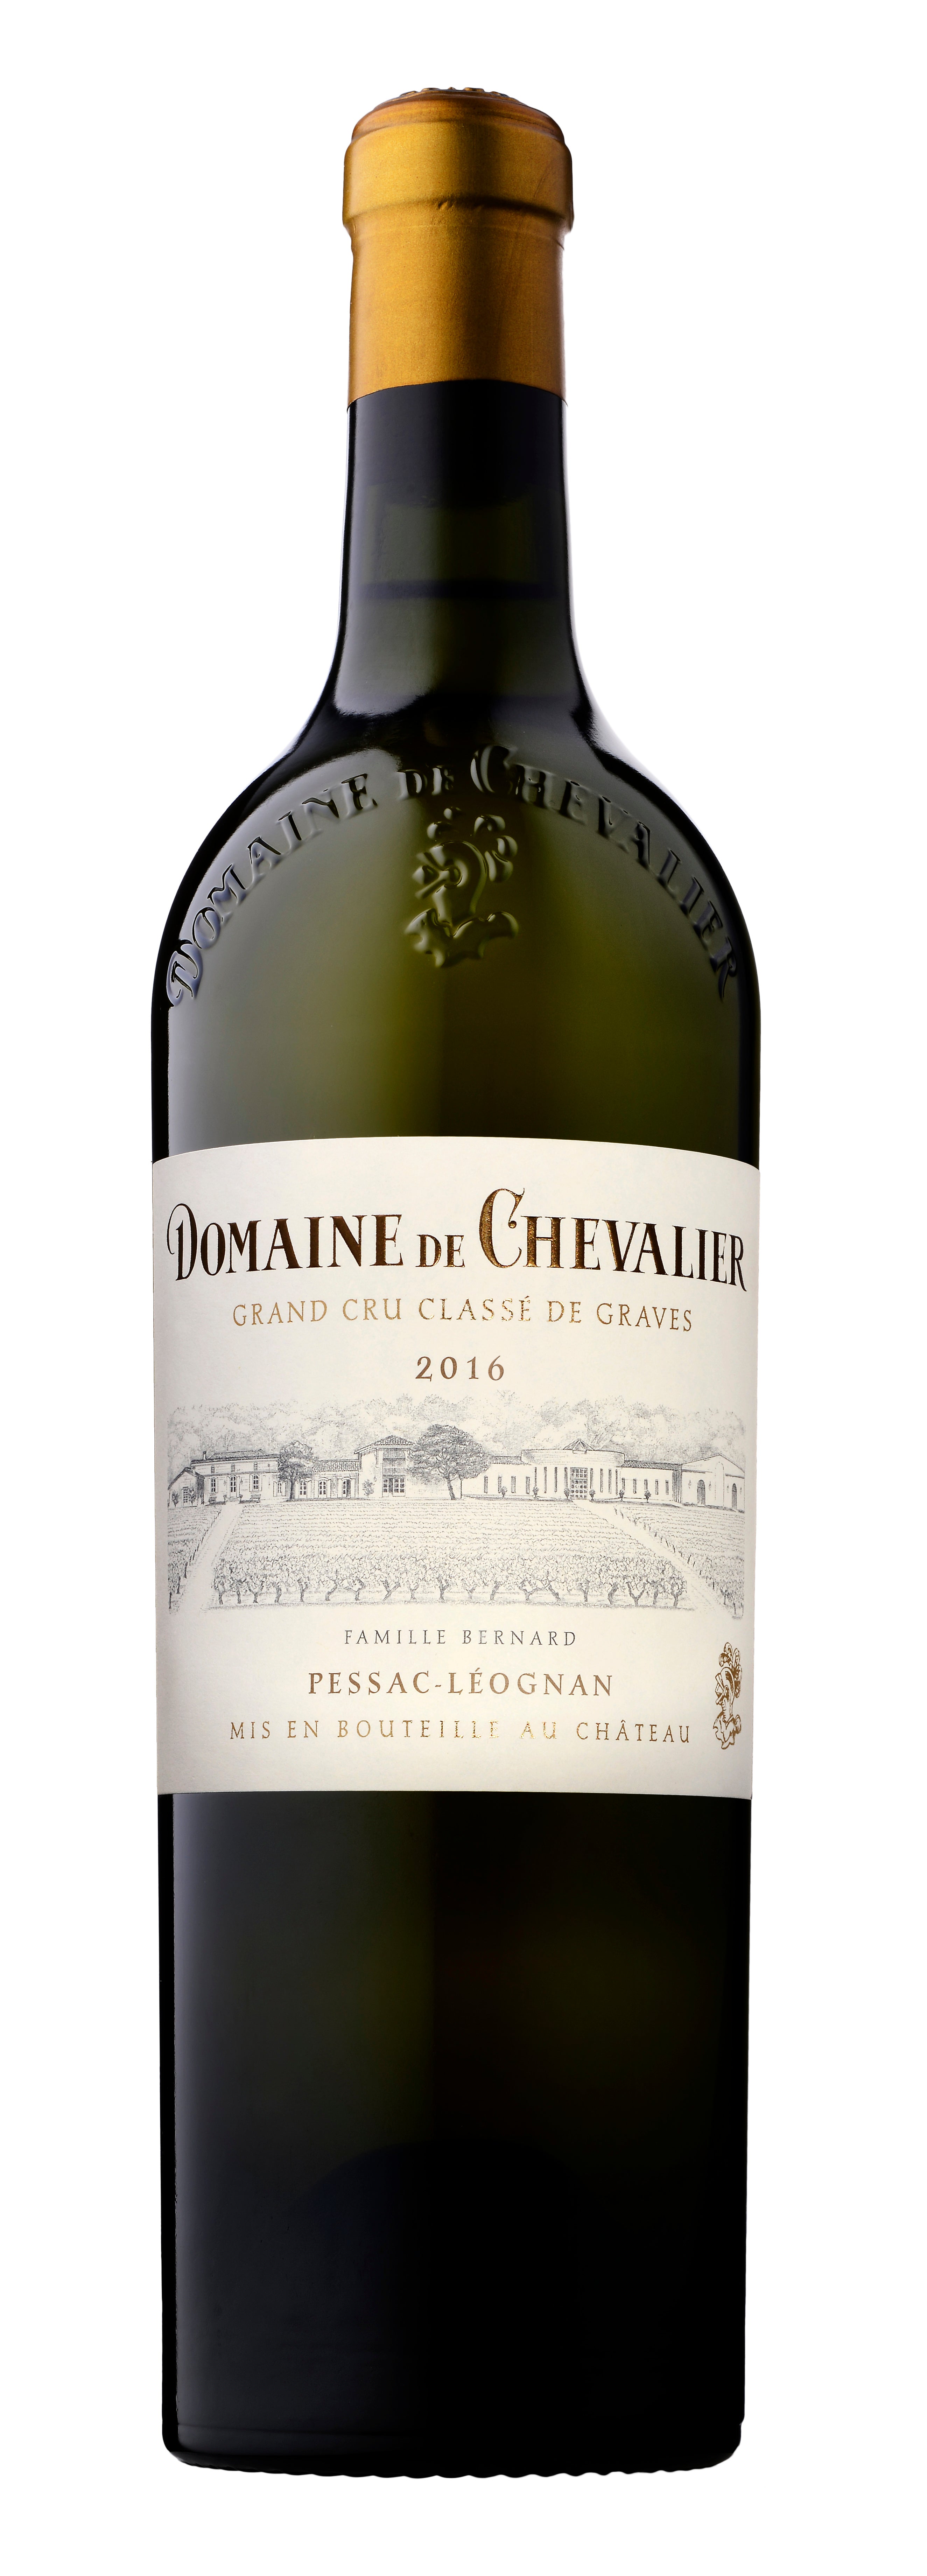 Domaine de Chevalier 2016 The Wine Gate Shop